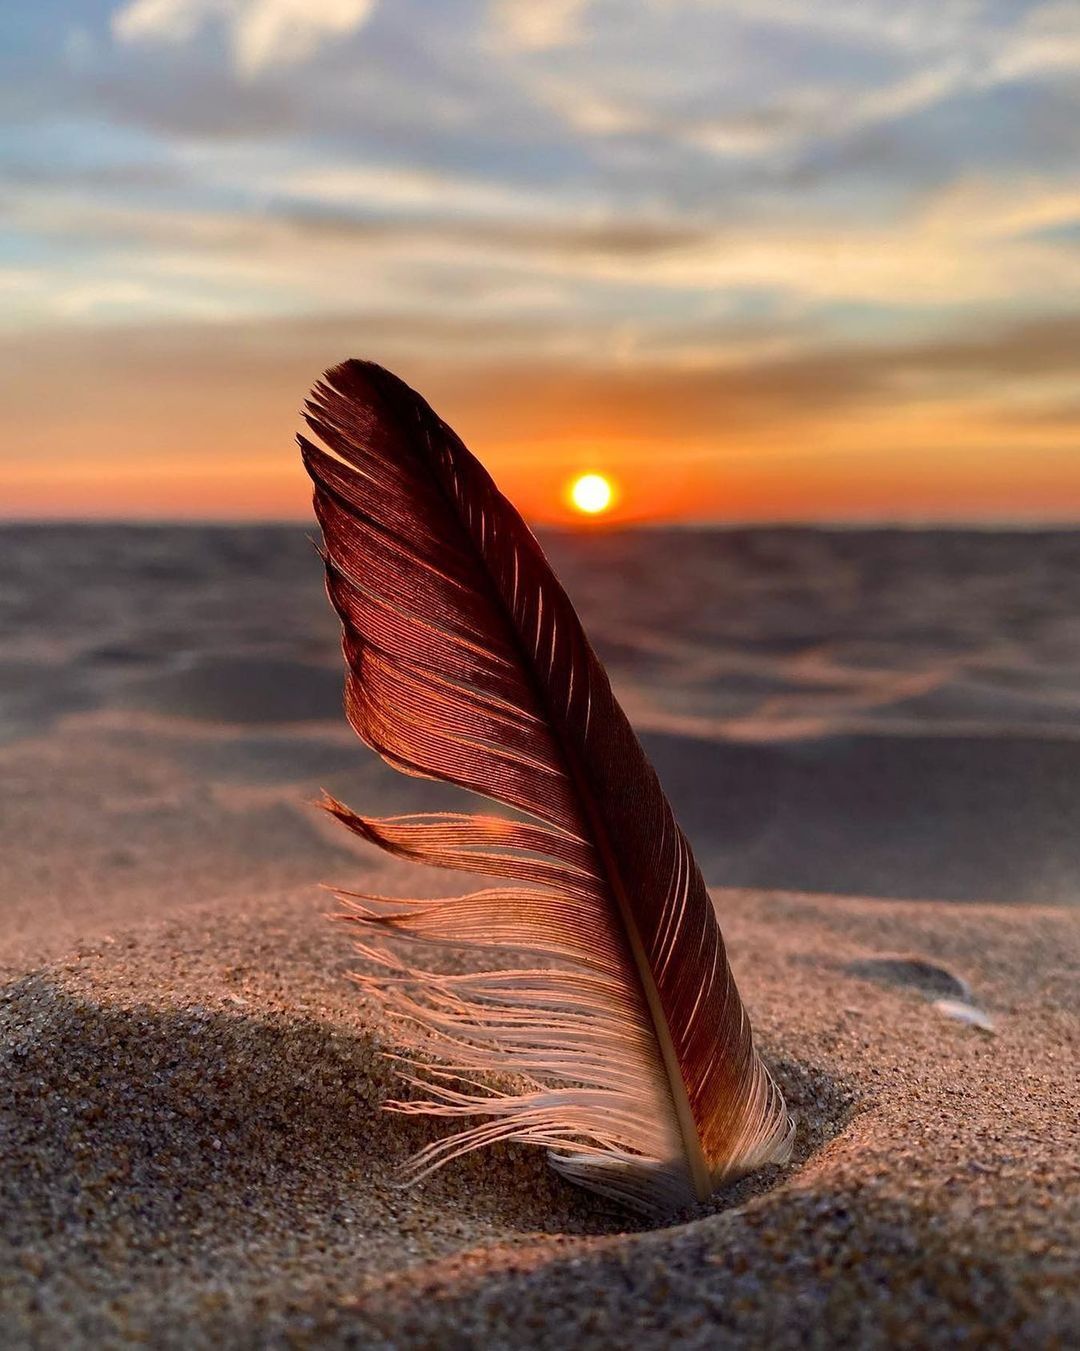 Фото Перо в песке на фоне заката солнца